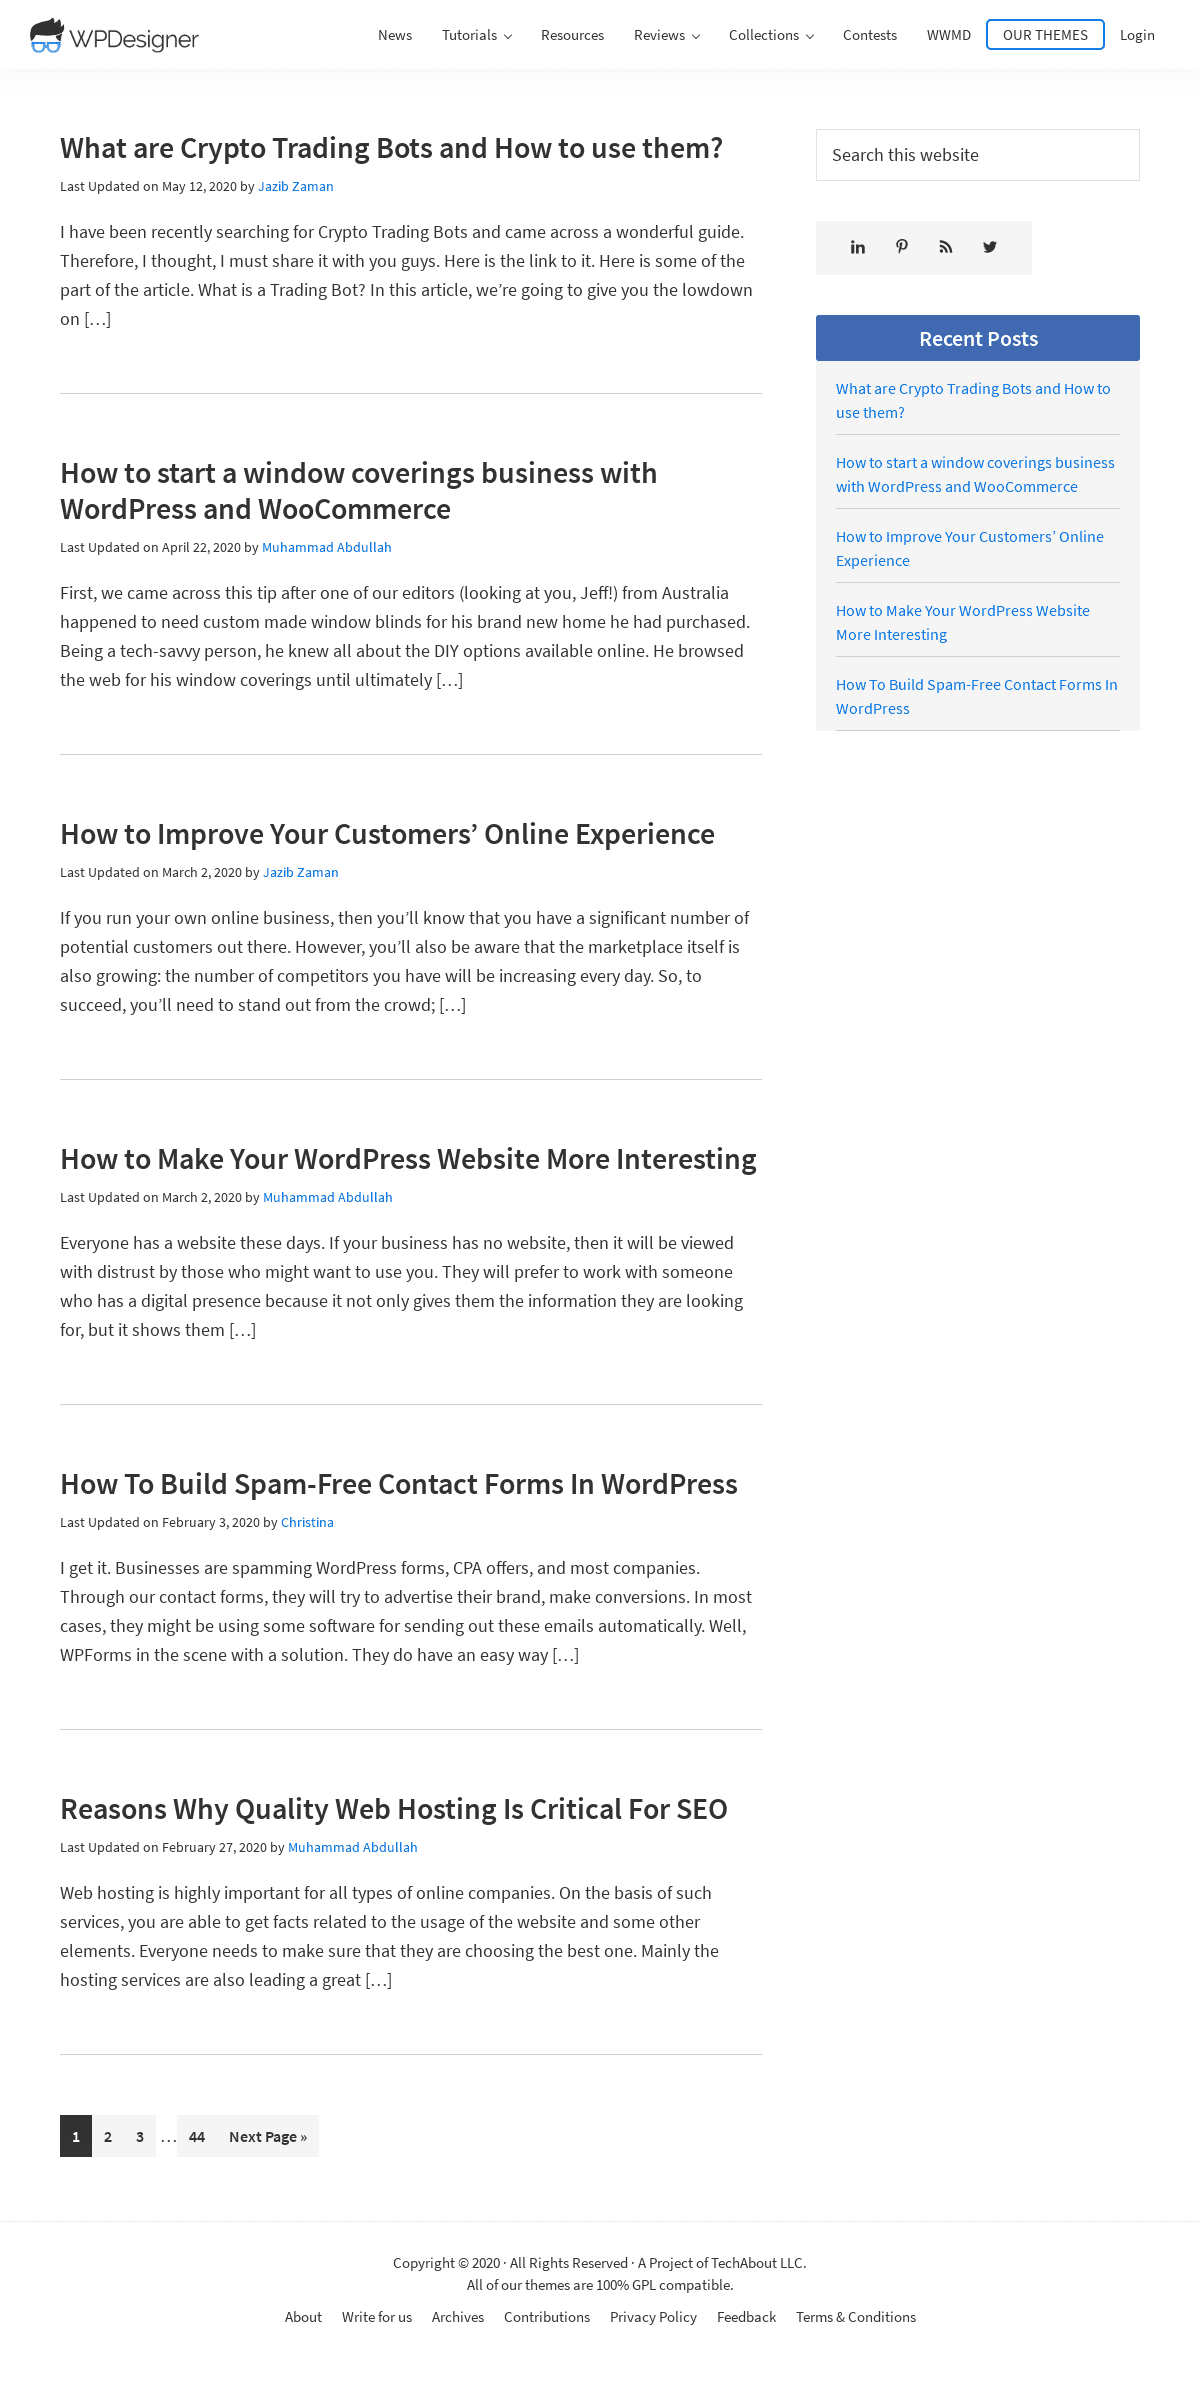 A complete backup of wpdesigner.com